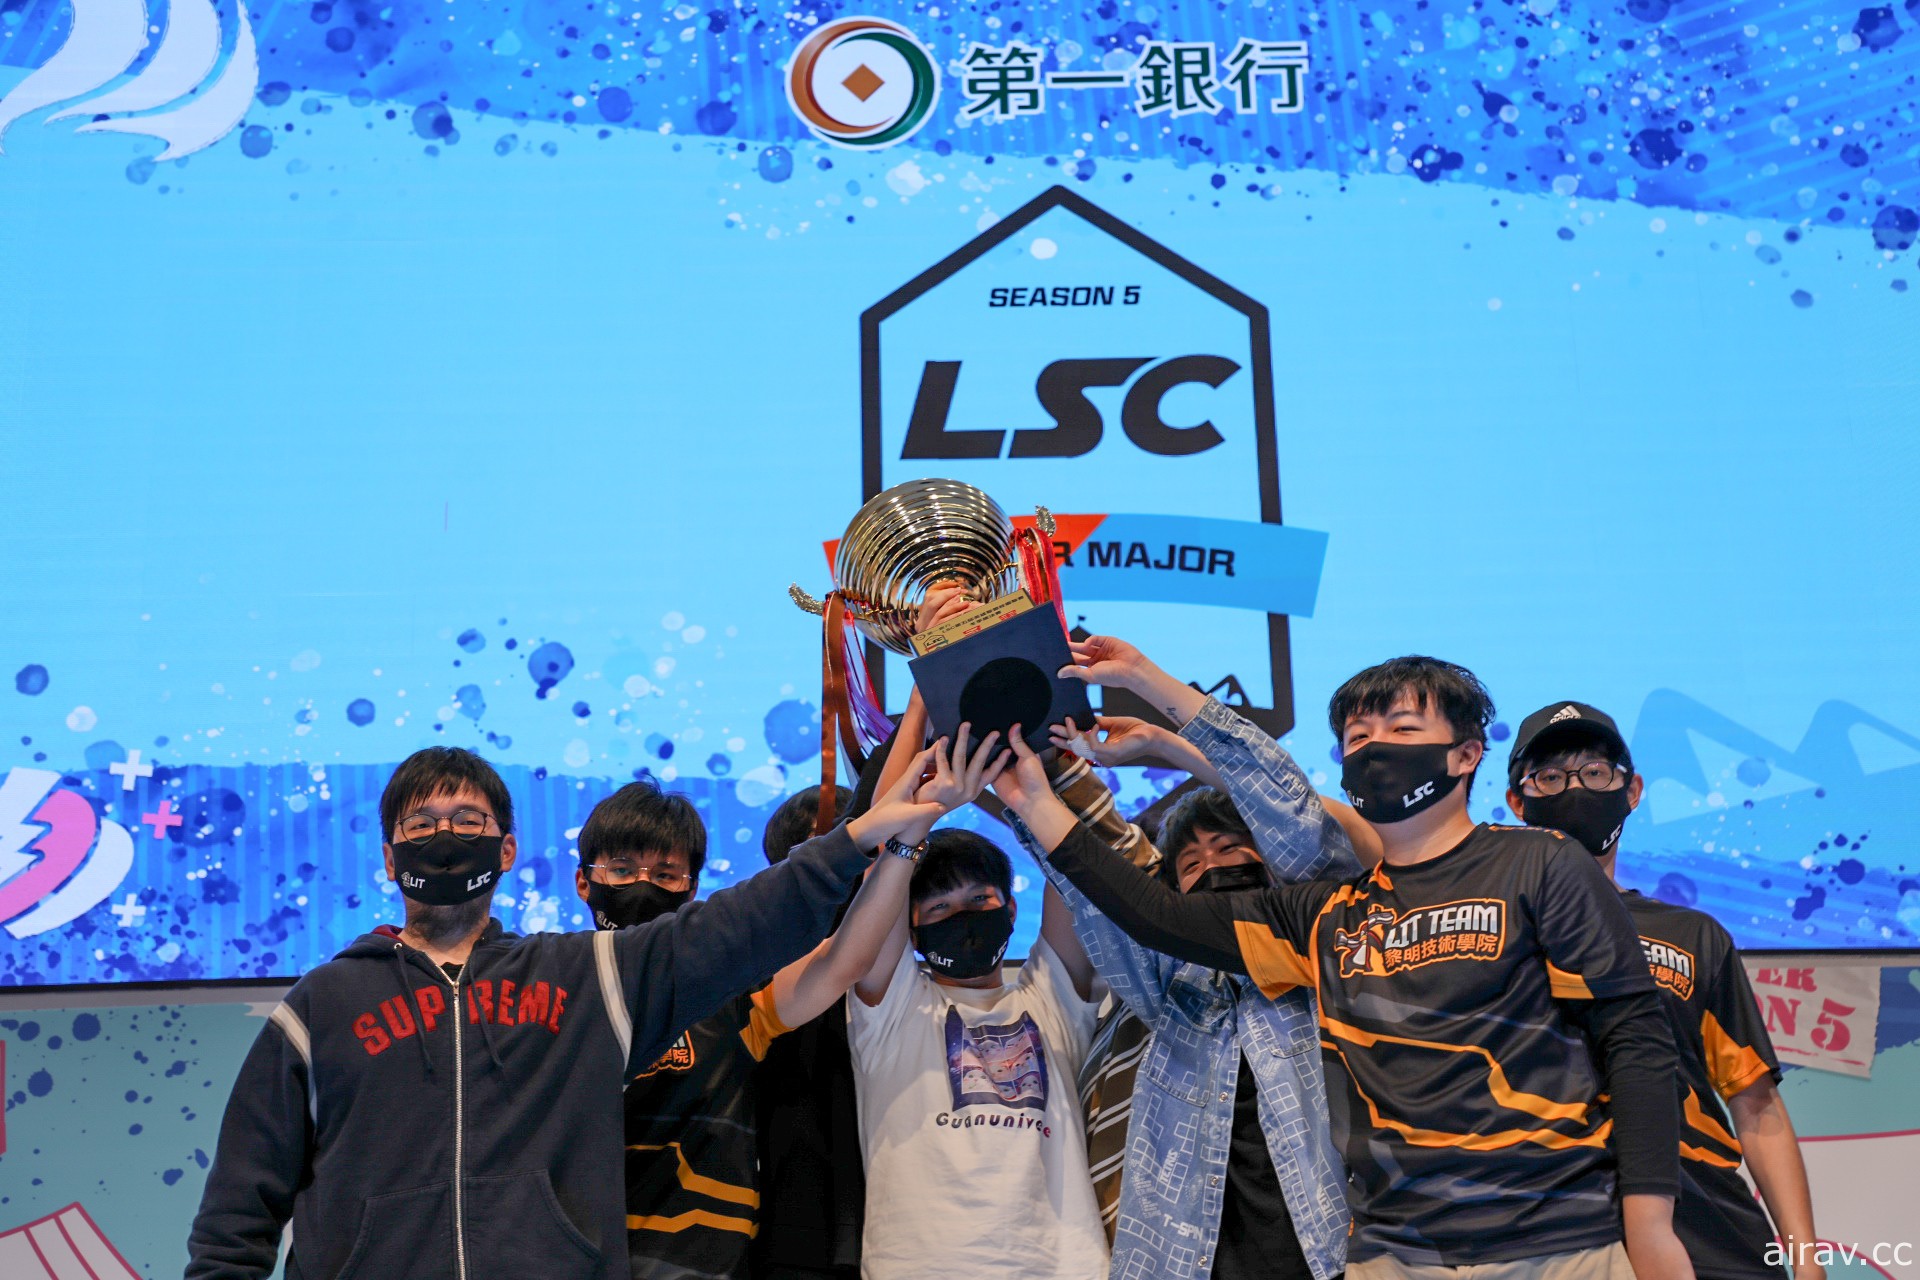 《英雄聯盟》第一銀行 LSC S5 冬季總決賽 黎明企鵝隊成功衛冕冠軍